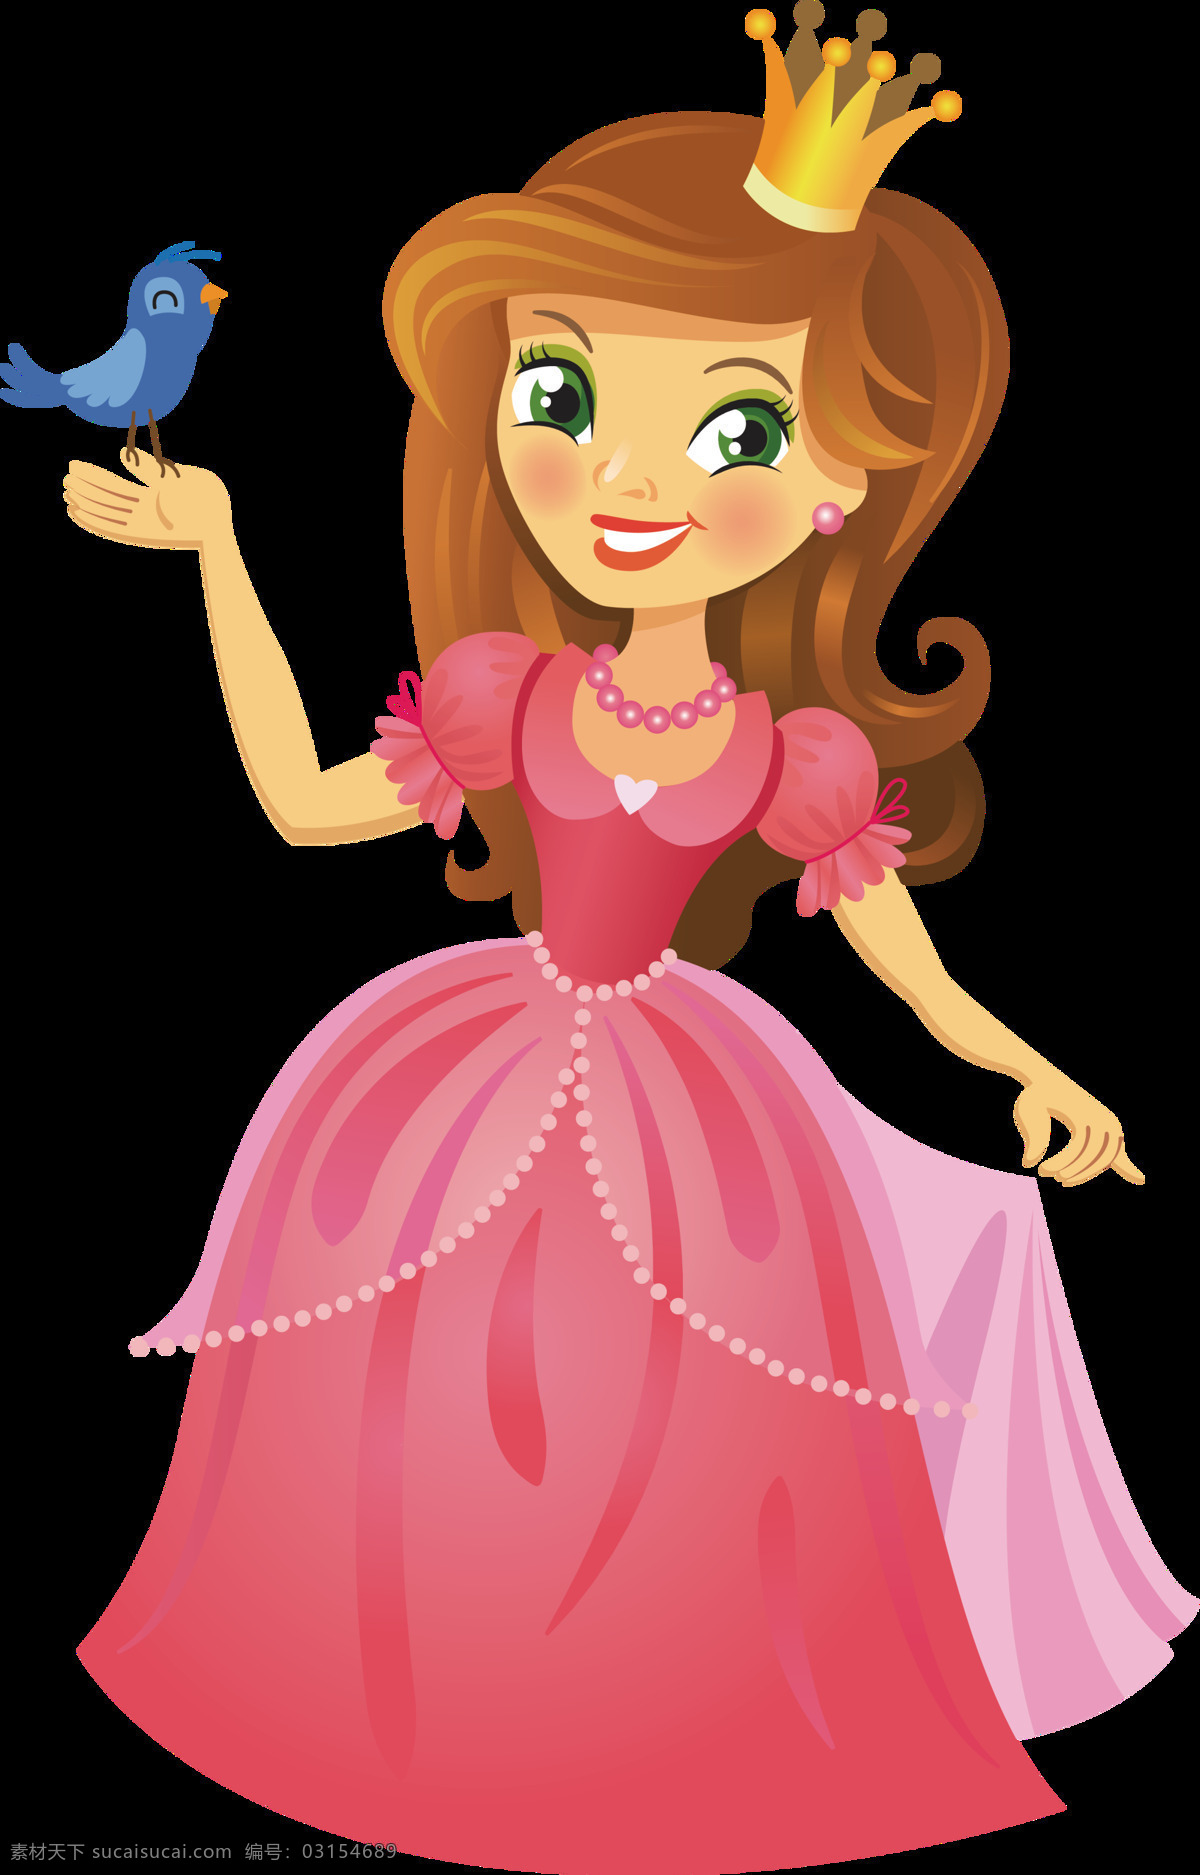 粉色 卡通 童话 公主 图案 精美装饰 手绘图 童话人物